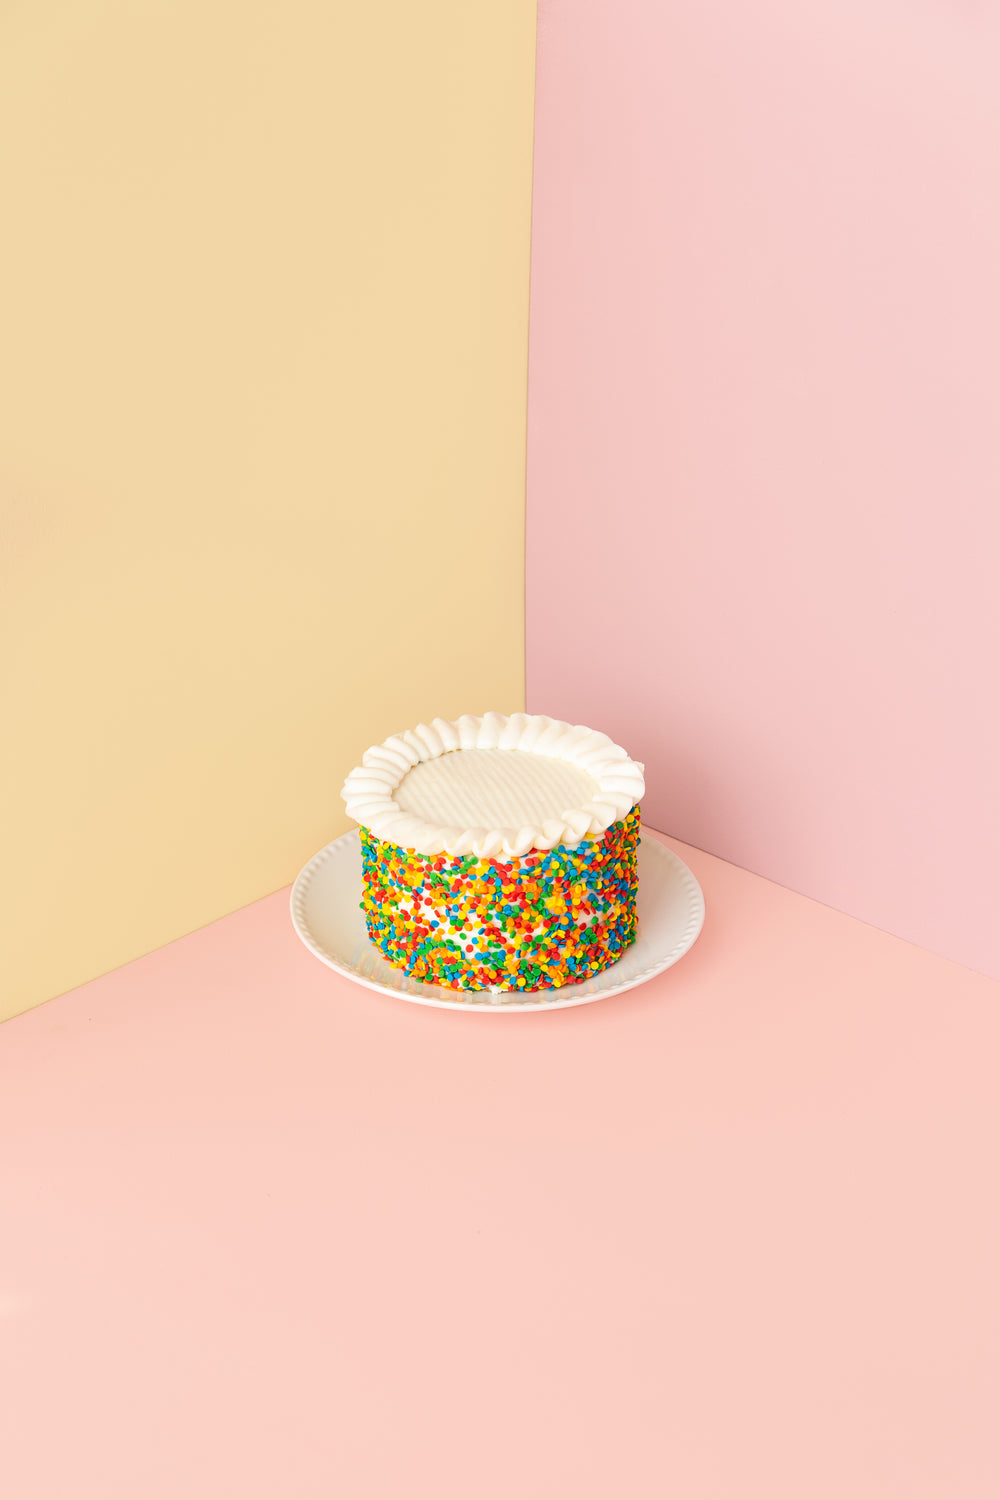 cake in a corner